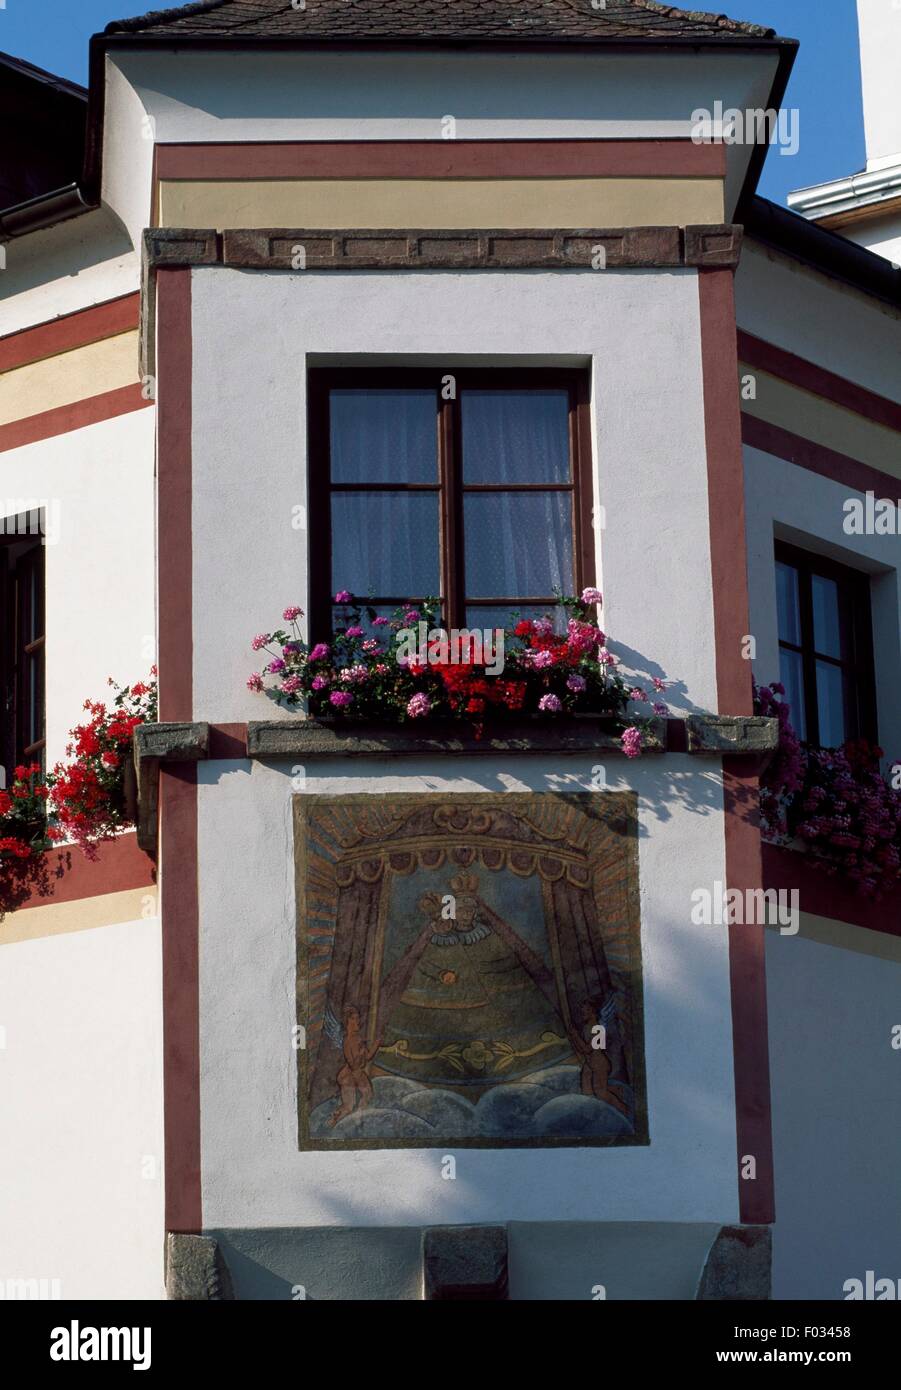 Fenêtre en saillie avec boite à fleurs, Jindrichuv Hradec, Bohême, République tchèque. Banque D'Images